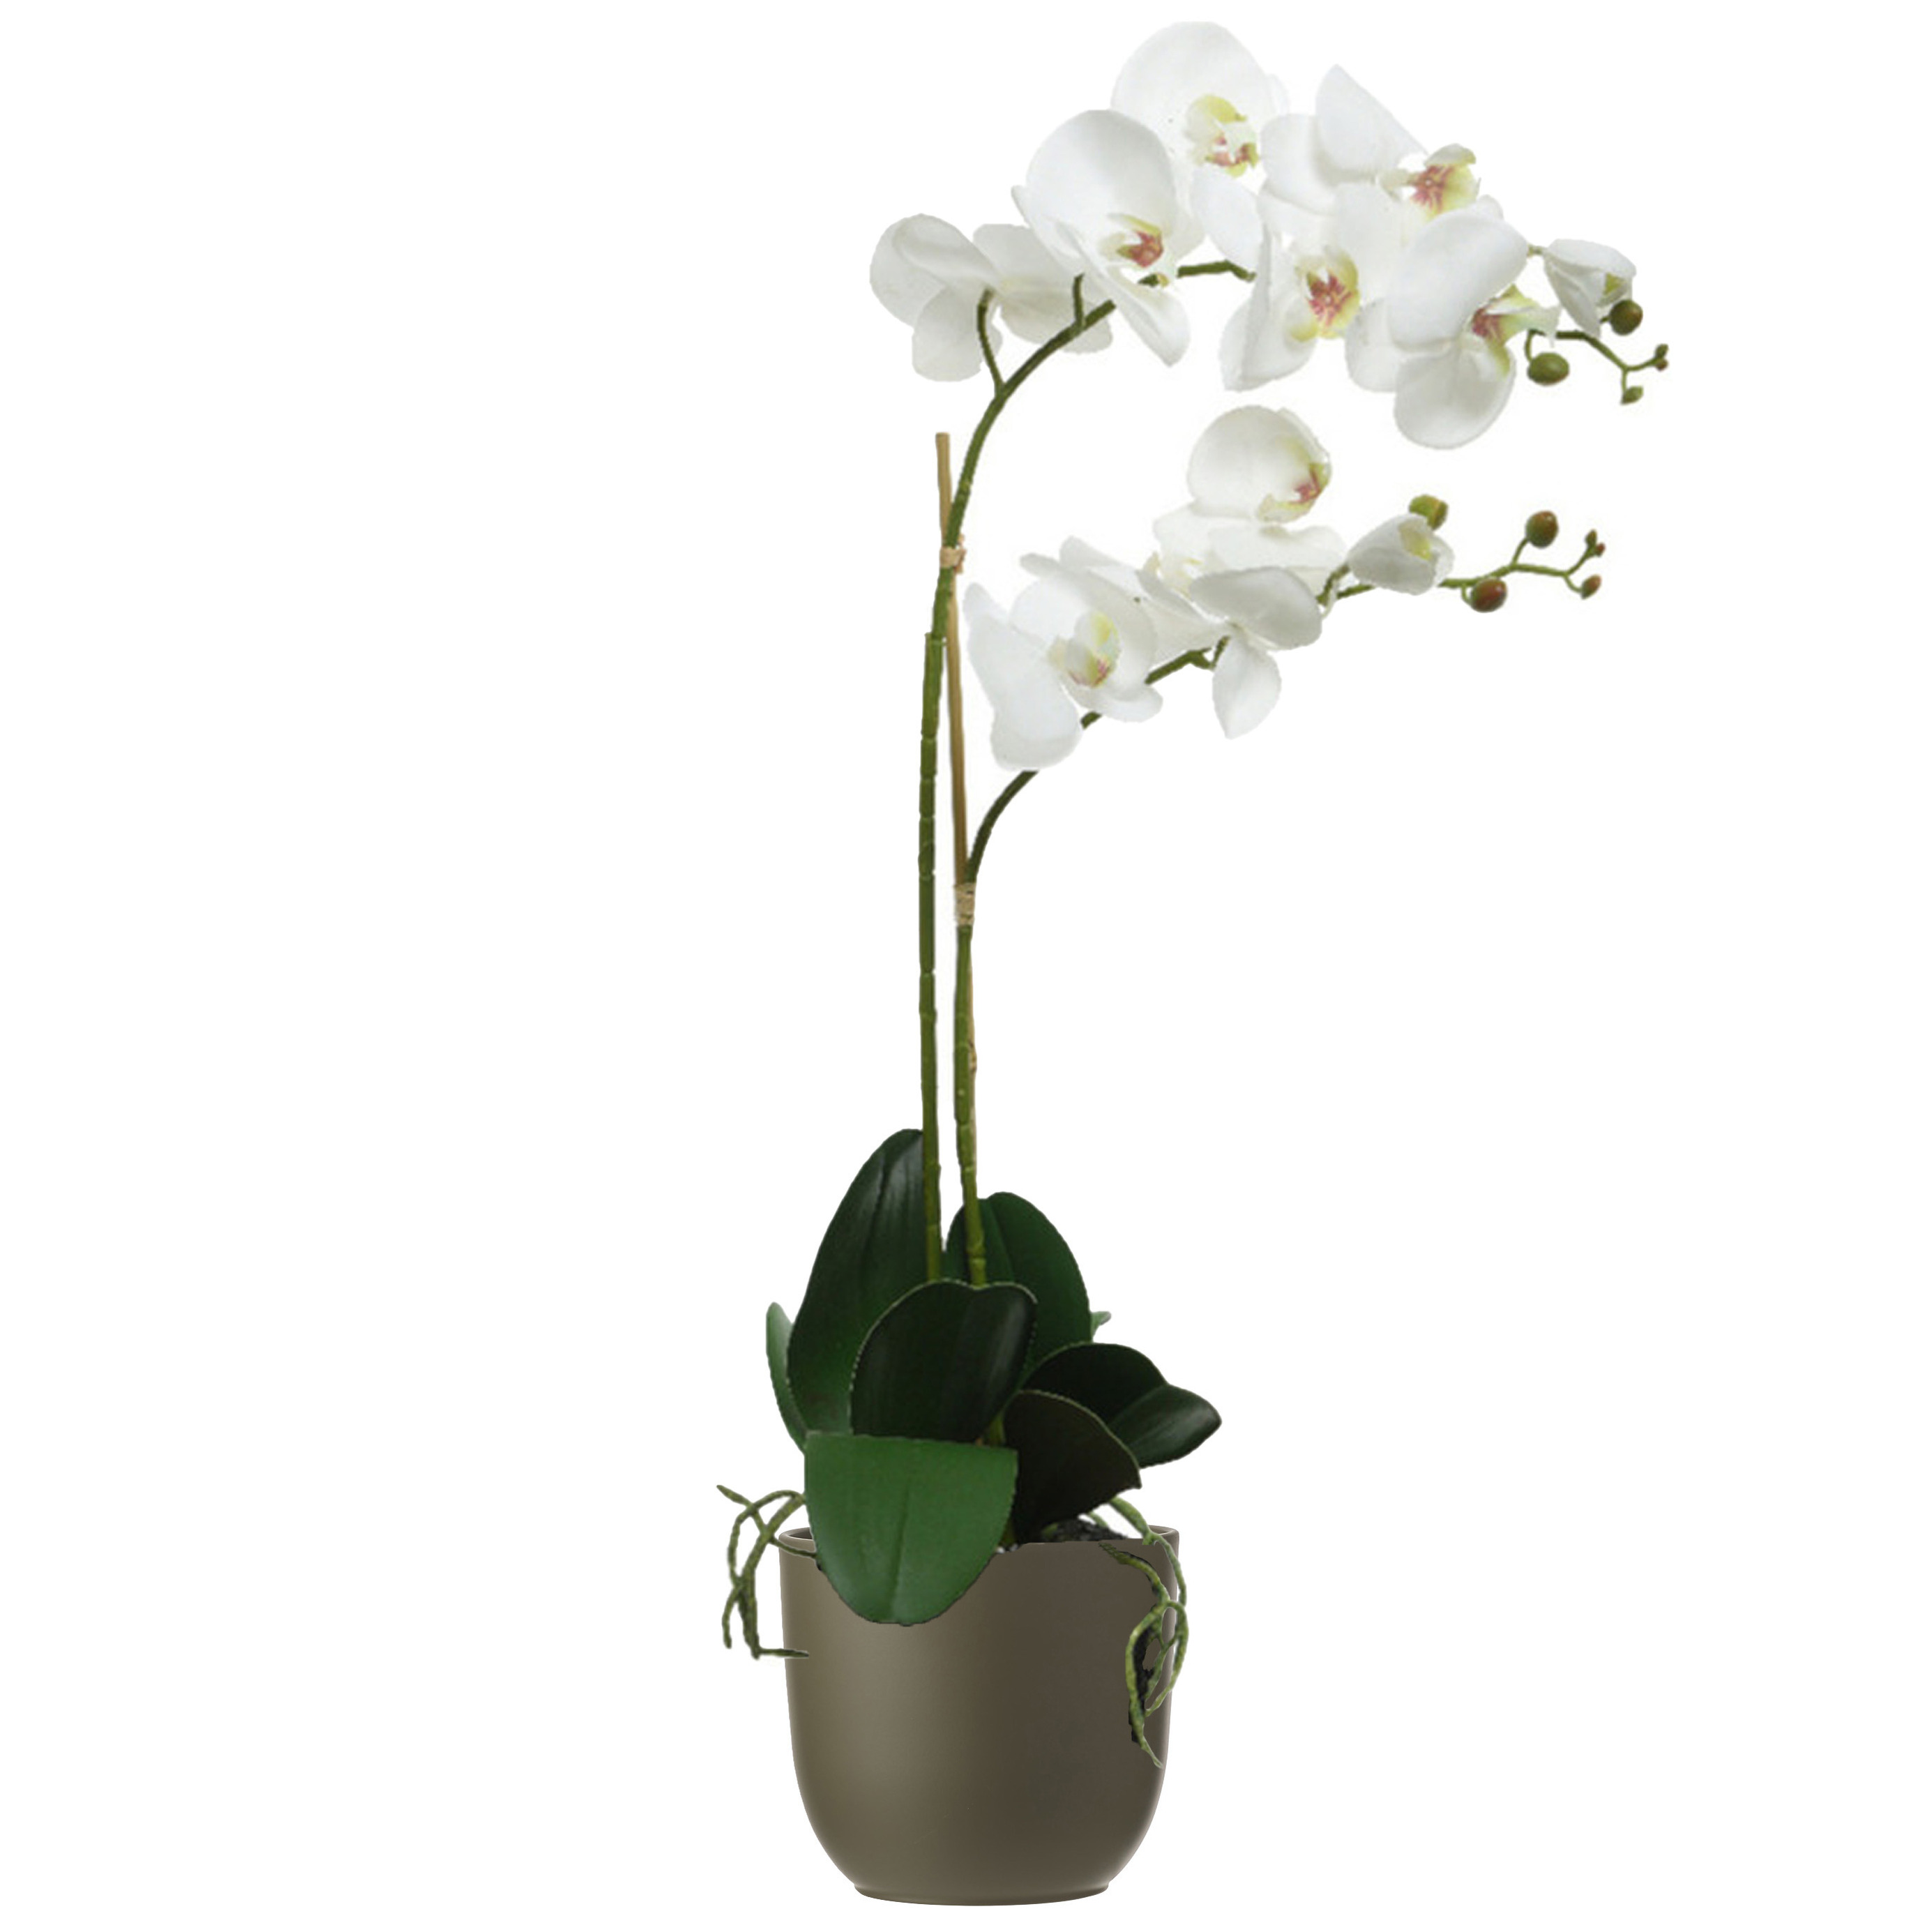 Orchidee kunstplant wit - 62 cm - inclusief bloempot olijfgroen mat - Kunstbloemen in pot